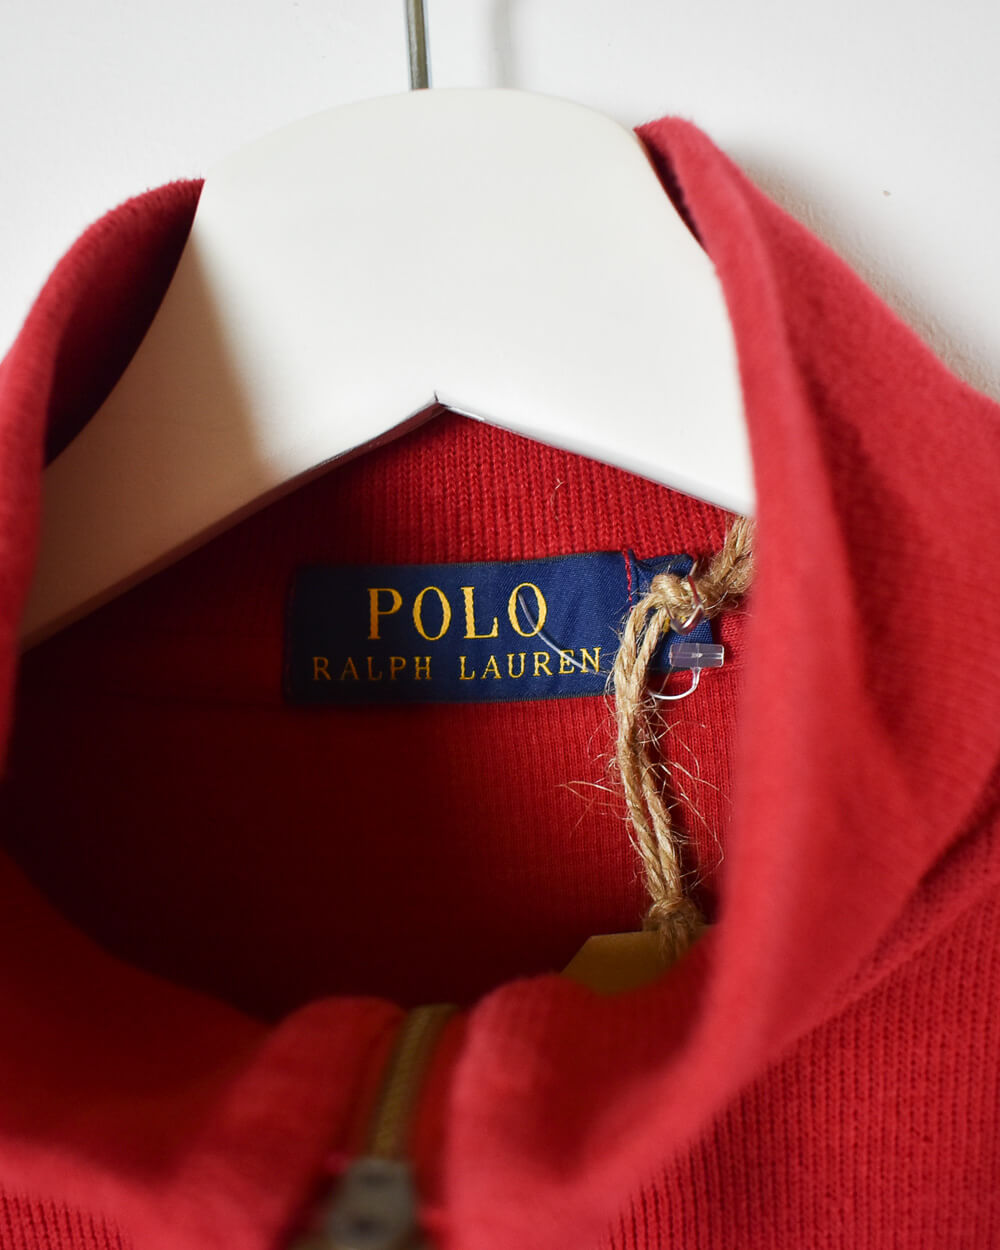 Red Ralph Lauren 1/4 Zip Sweatshirt - Medium